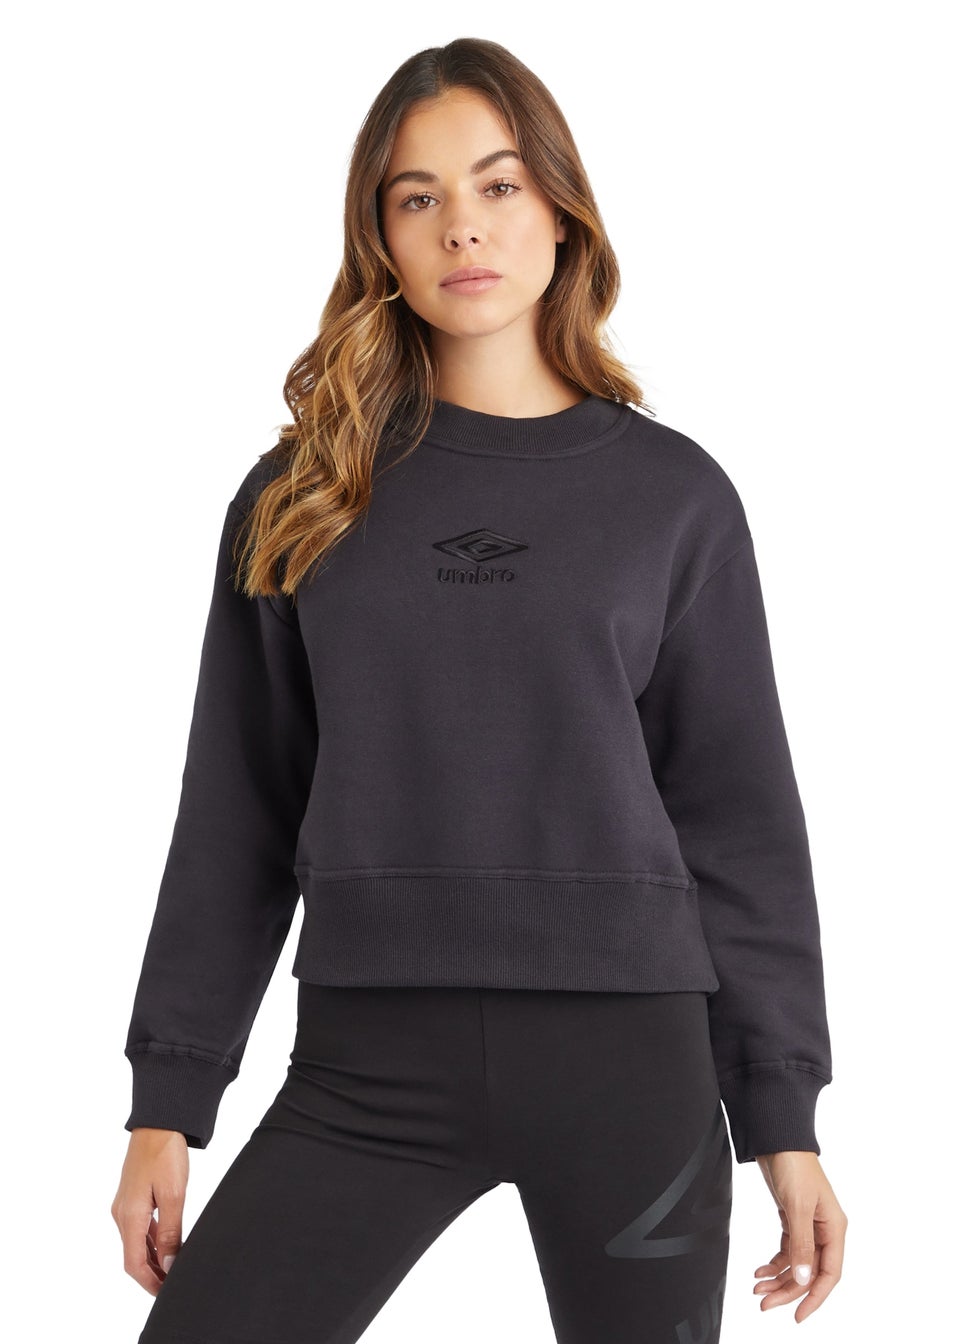 Umbro Black Core Boxy Sweatshirt